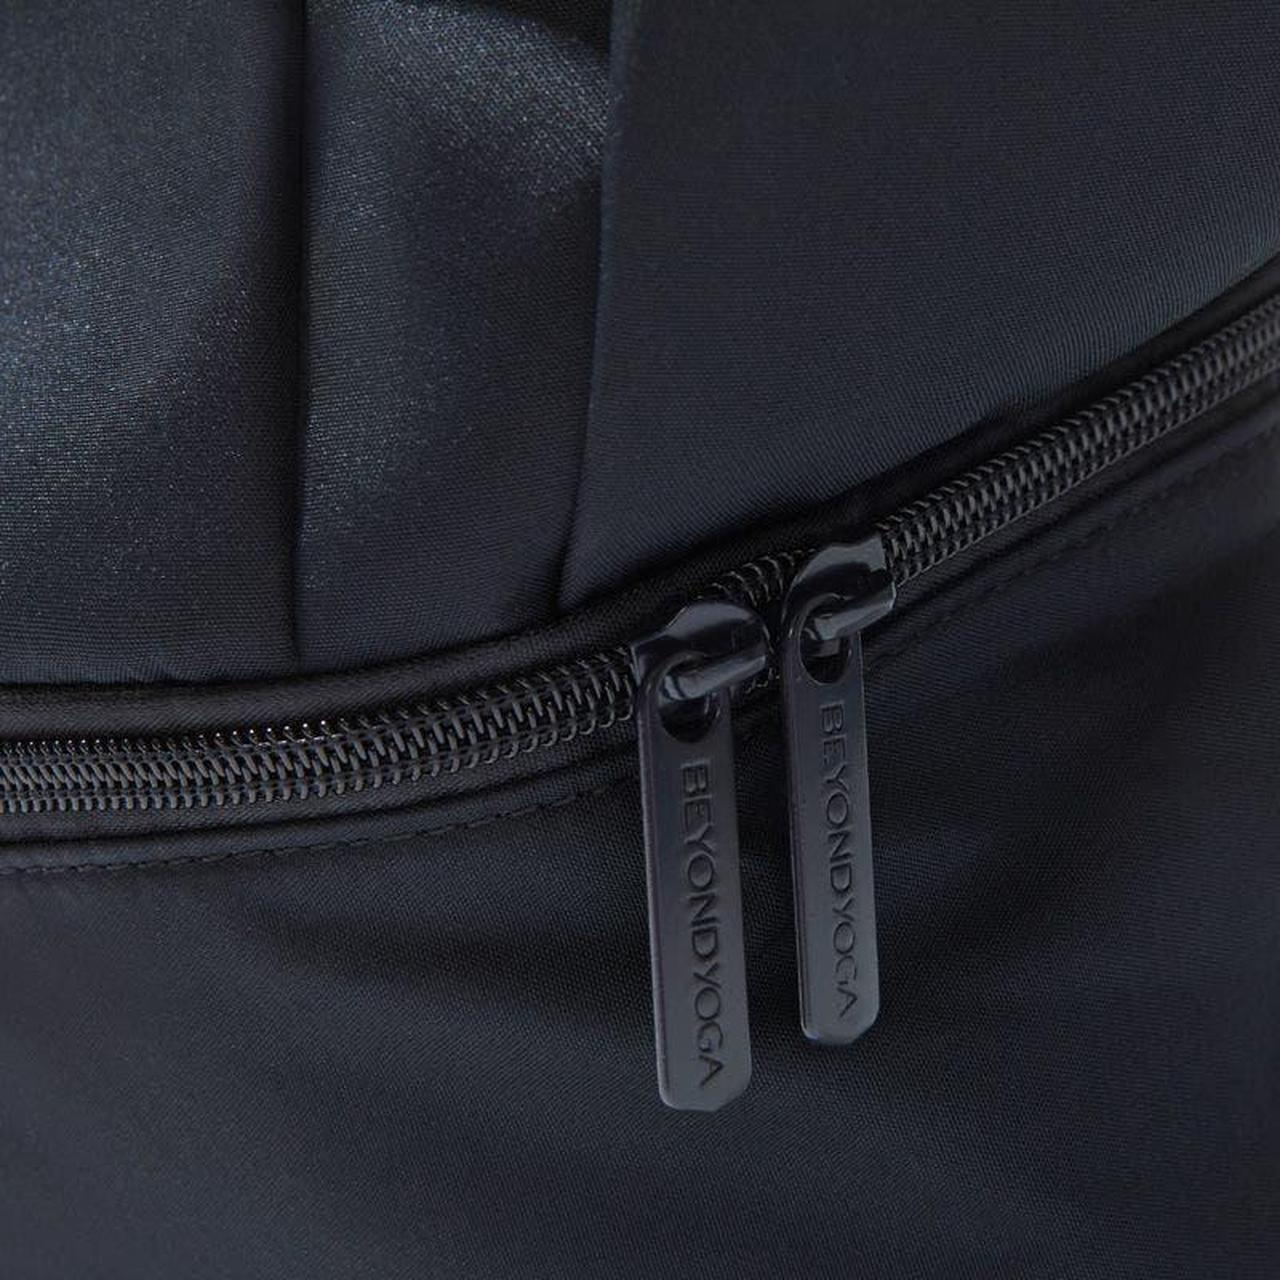 Beyond Yoga, Bags, New Beyond Yoga Black Convertible Backpacktote Bag